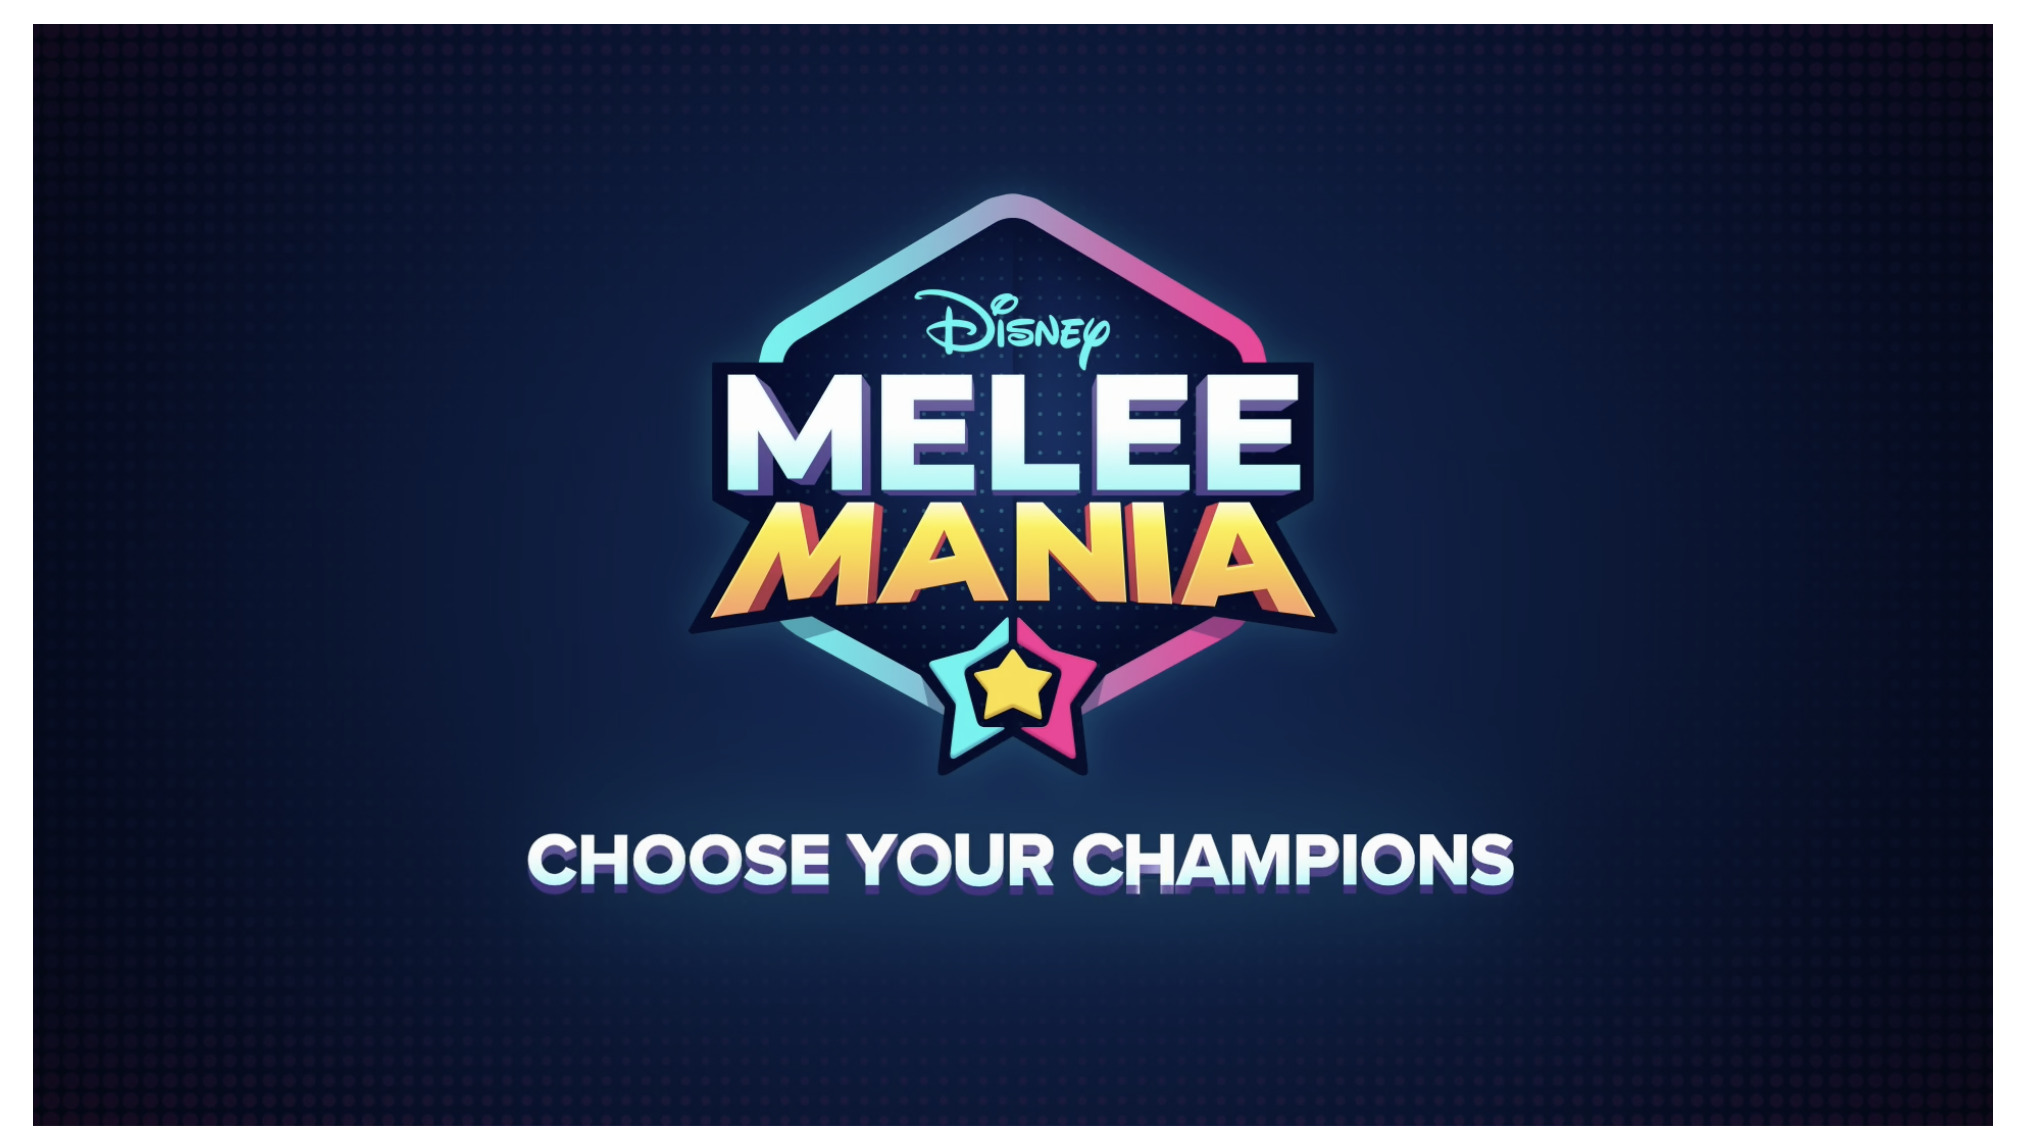 Disney Melee Mania il gioco di lotta tra personaggi Disney e Pixar